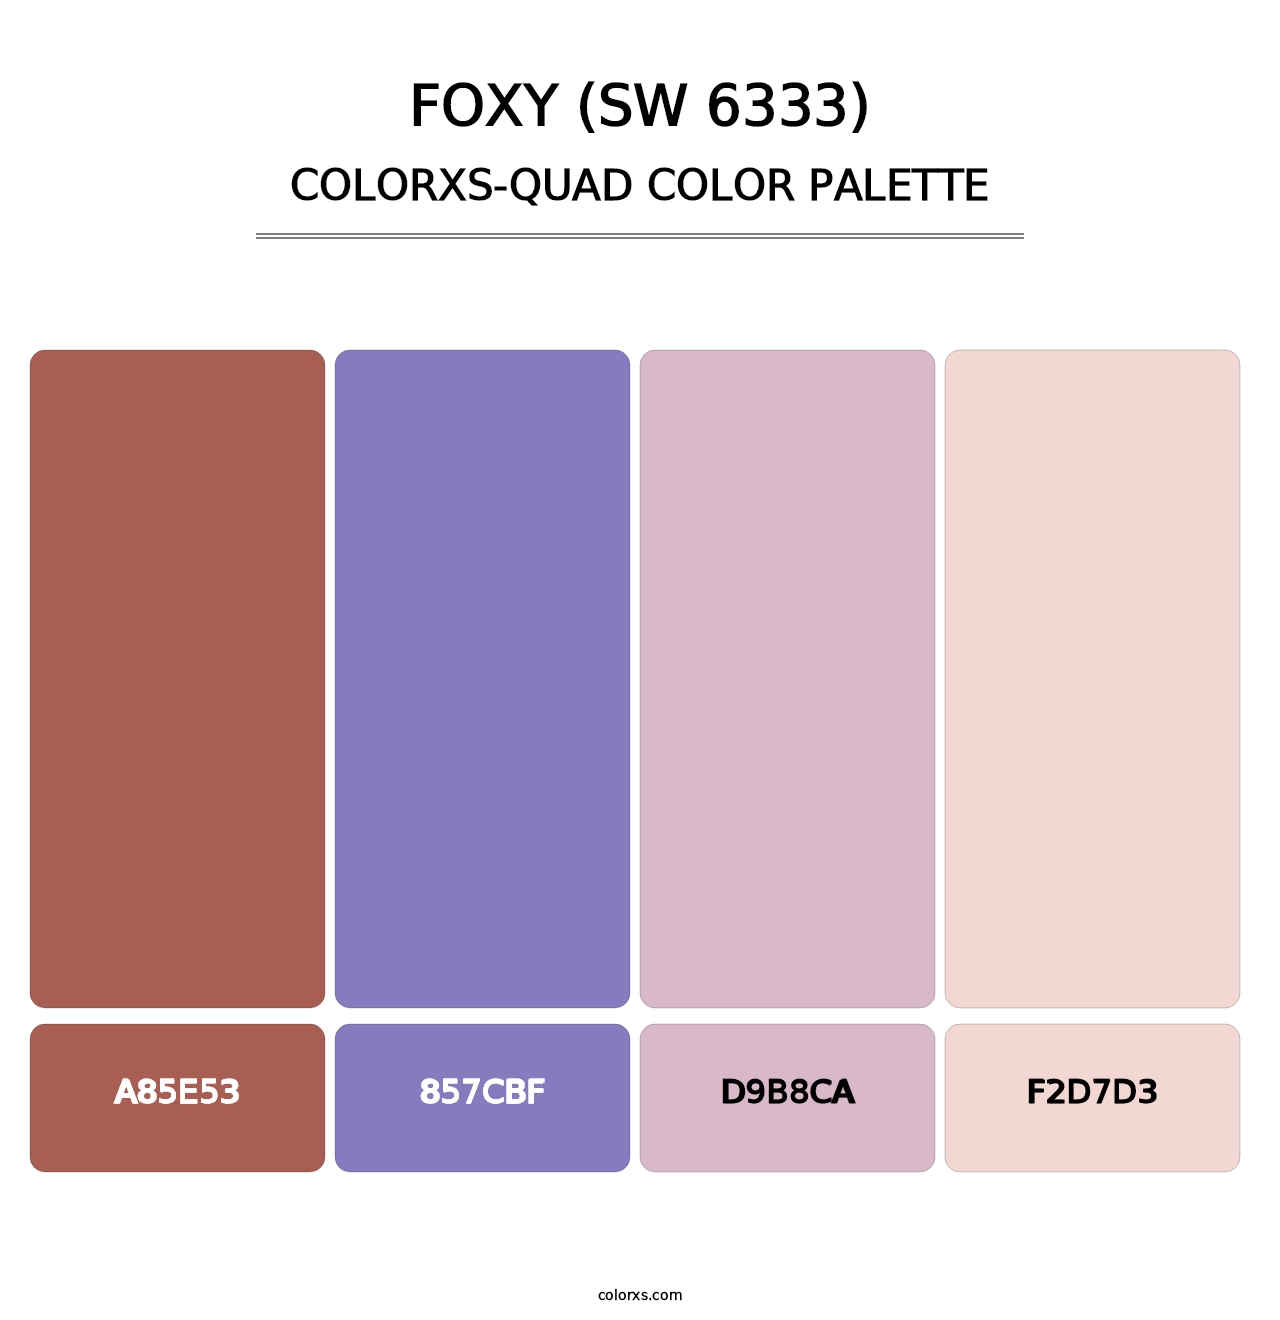 Foxy (SW 6333) - Colorxs Quad Palette